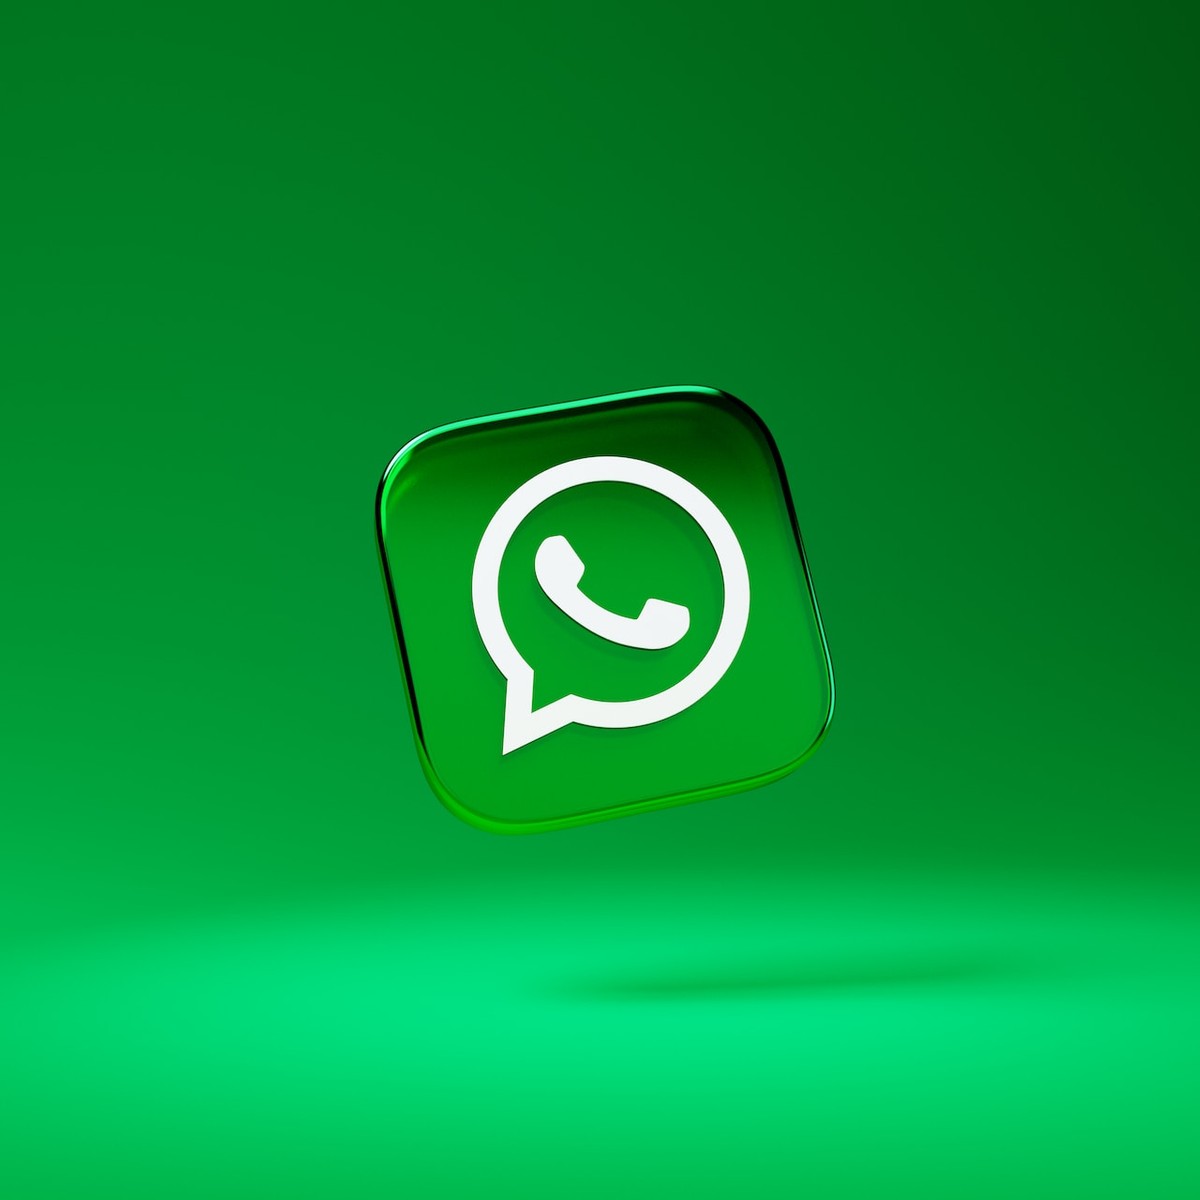 WhatsApp é lançado para relógios inteligentes com sistema Wear OS